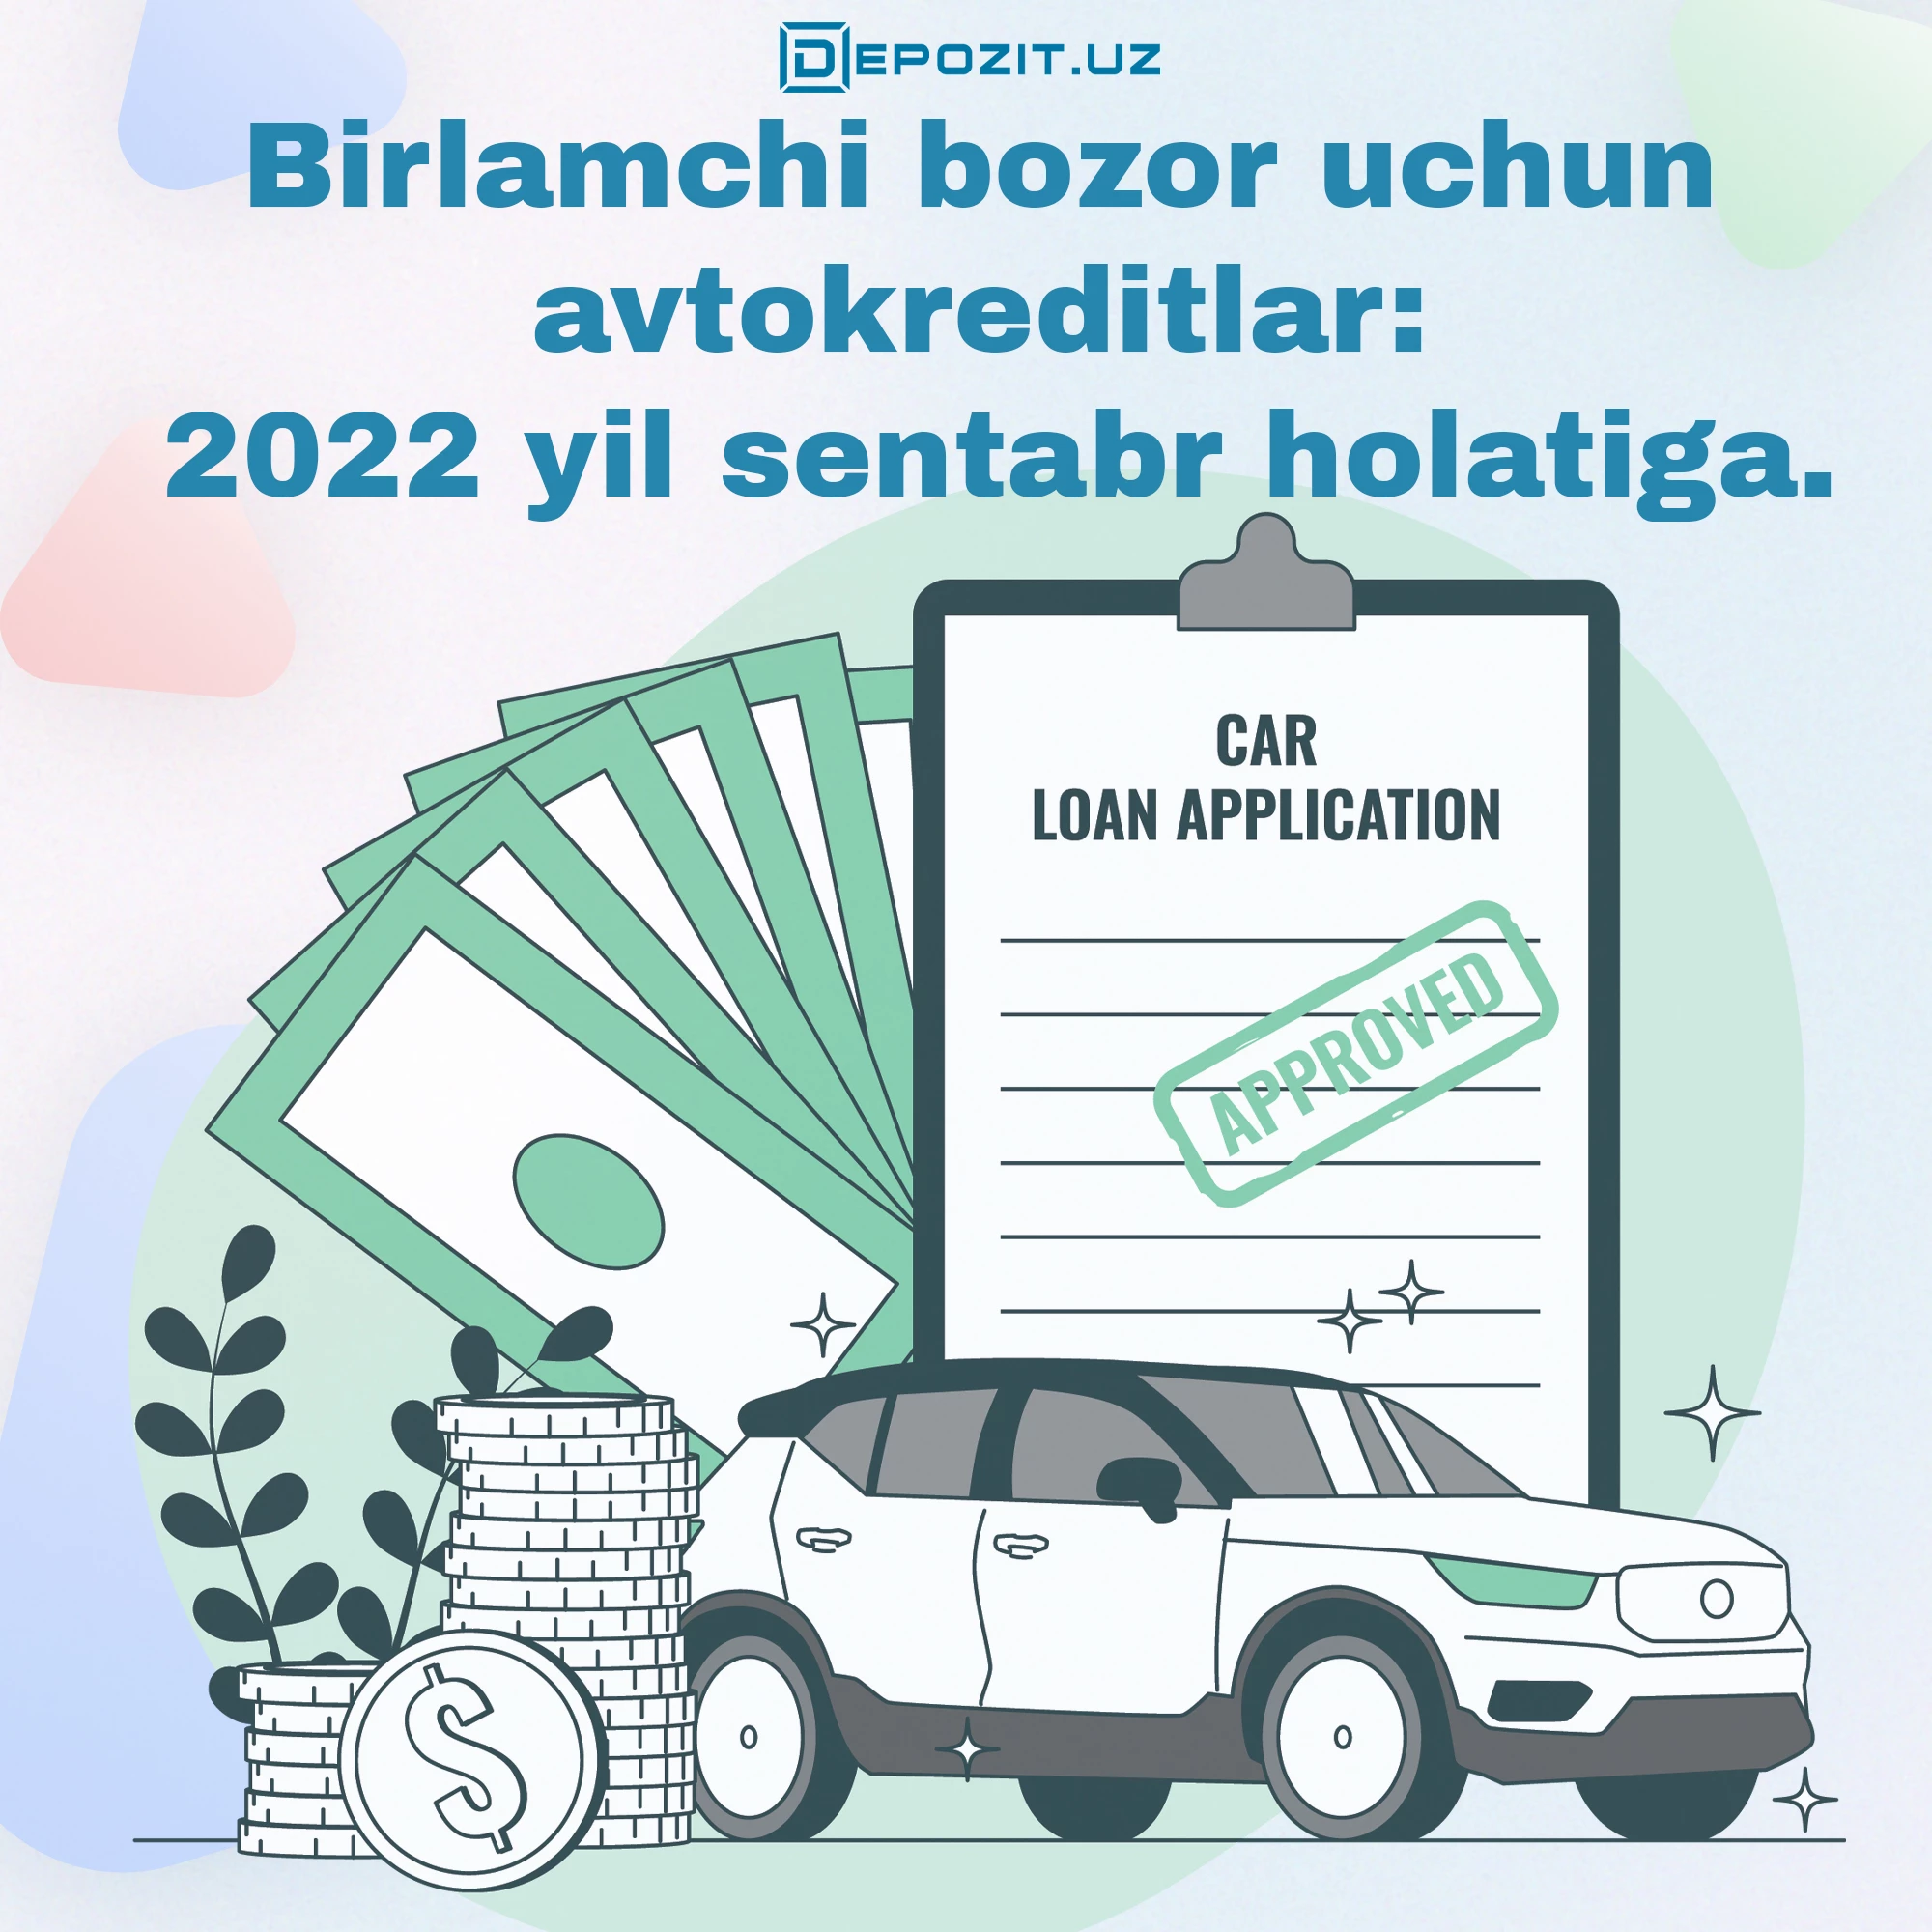 Birlamchi bozor uchun avtokreditlar: 2022 yil sentabr holatiga.